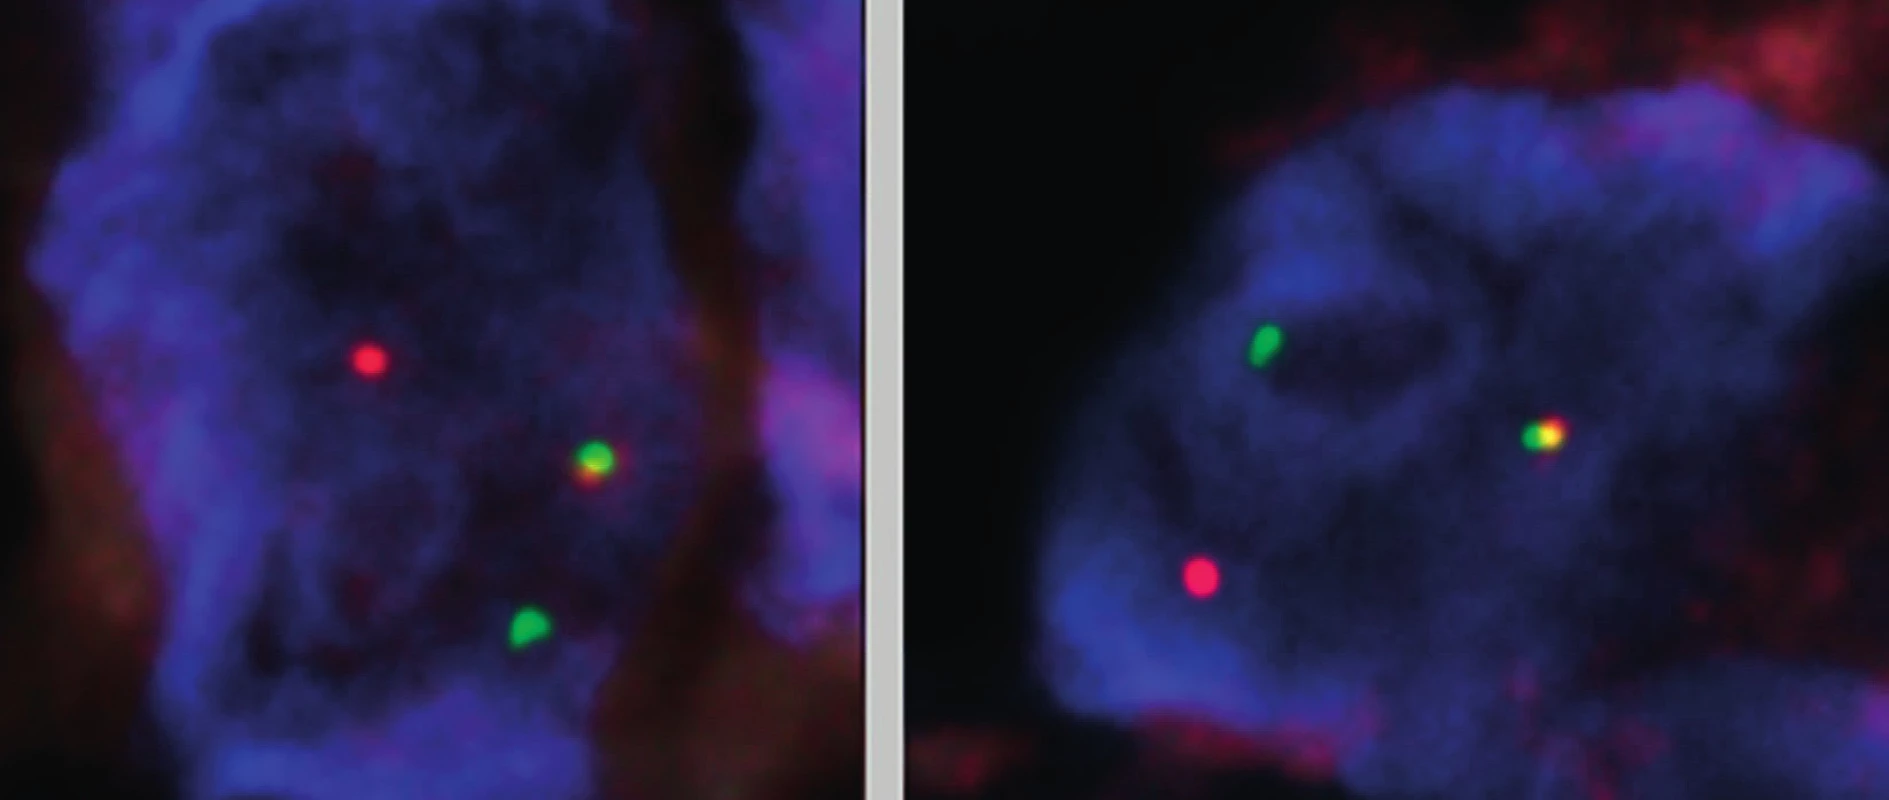 Metoda FISH – mikrofotografie dvou jader buněk se zlomem v oblasti genu USP6 (17p13.2). (V každém z jader buněk jsou přítomné dva chromozomy 17; jeden chromozom 17 se zlomem v oblasti genu USP6 – oddálené zelené a červené signály, druhý chromozom 17 s intaktní oblastí 17p13.2 – zeleno-žluto-červený signál). Fluorescenční in situ hybridizace na jádrech v interfázi, histologický řez z formolem fixované a do parafinu zalité tkáně; sonda umožňující detekci zlomu v oblasti 17p13.2 (oblast za místem zlomu směrem 
 k centromeře chromozomu 17 je značena fluorochromem poskytujícím červenou fluorescenci, oblast za místem zlomu směrem k telomeře chromozomu 17 je značena fluorochromem poskytujícím zelenou fluorescenci, jádra zvýrazněna fluorochromem poskytujícím modrou fluorescenci).